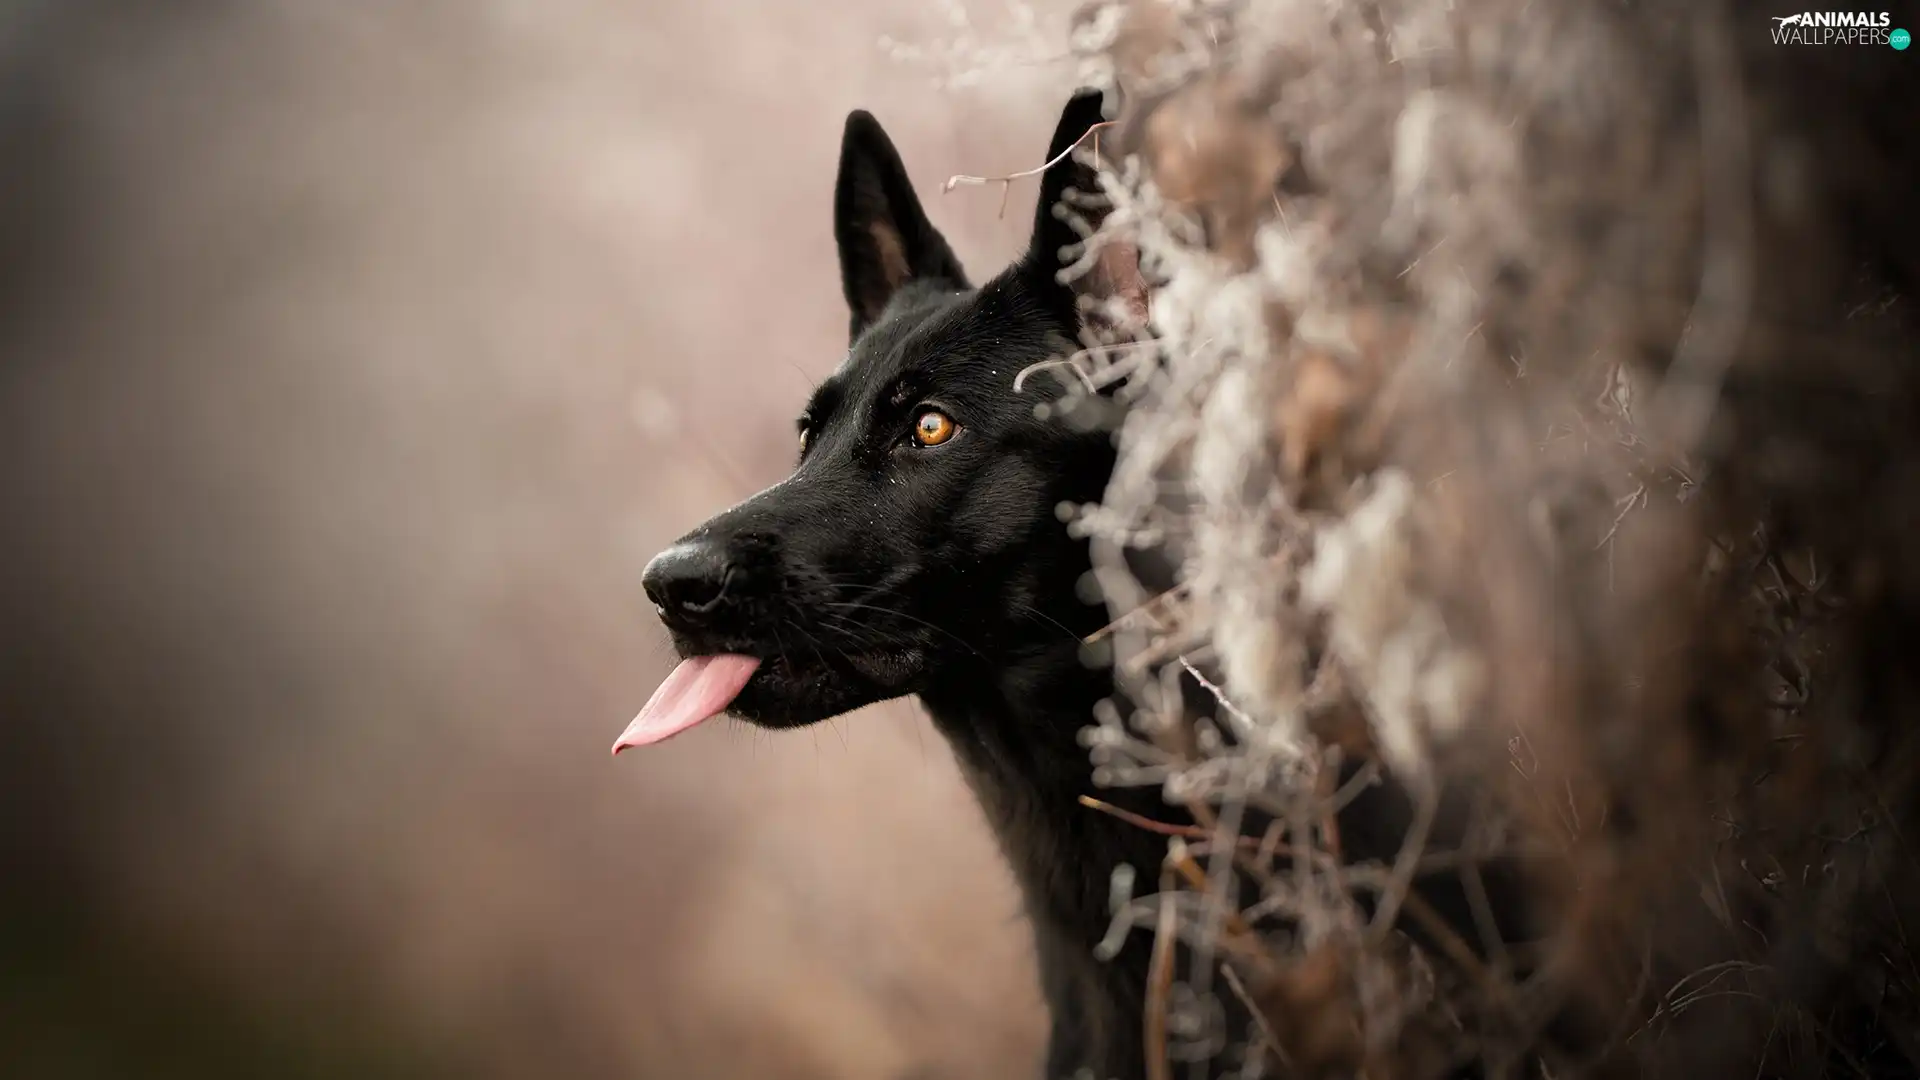 Tounge, Black German Shepherd Dog, fuzzy, muzzle, dog, Plants, background